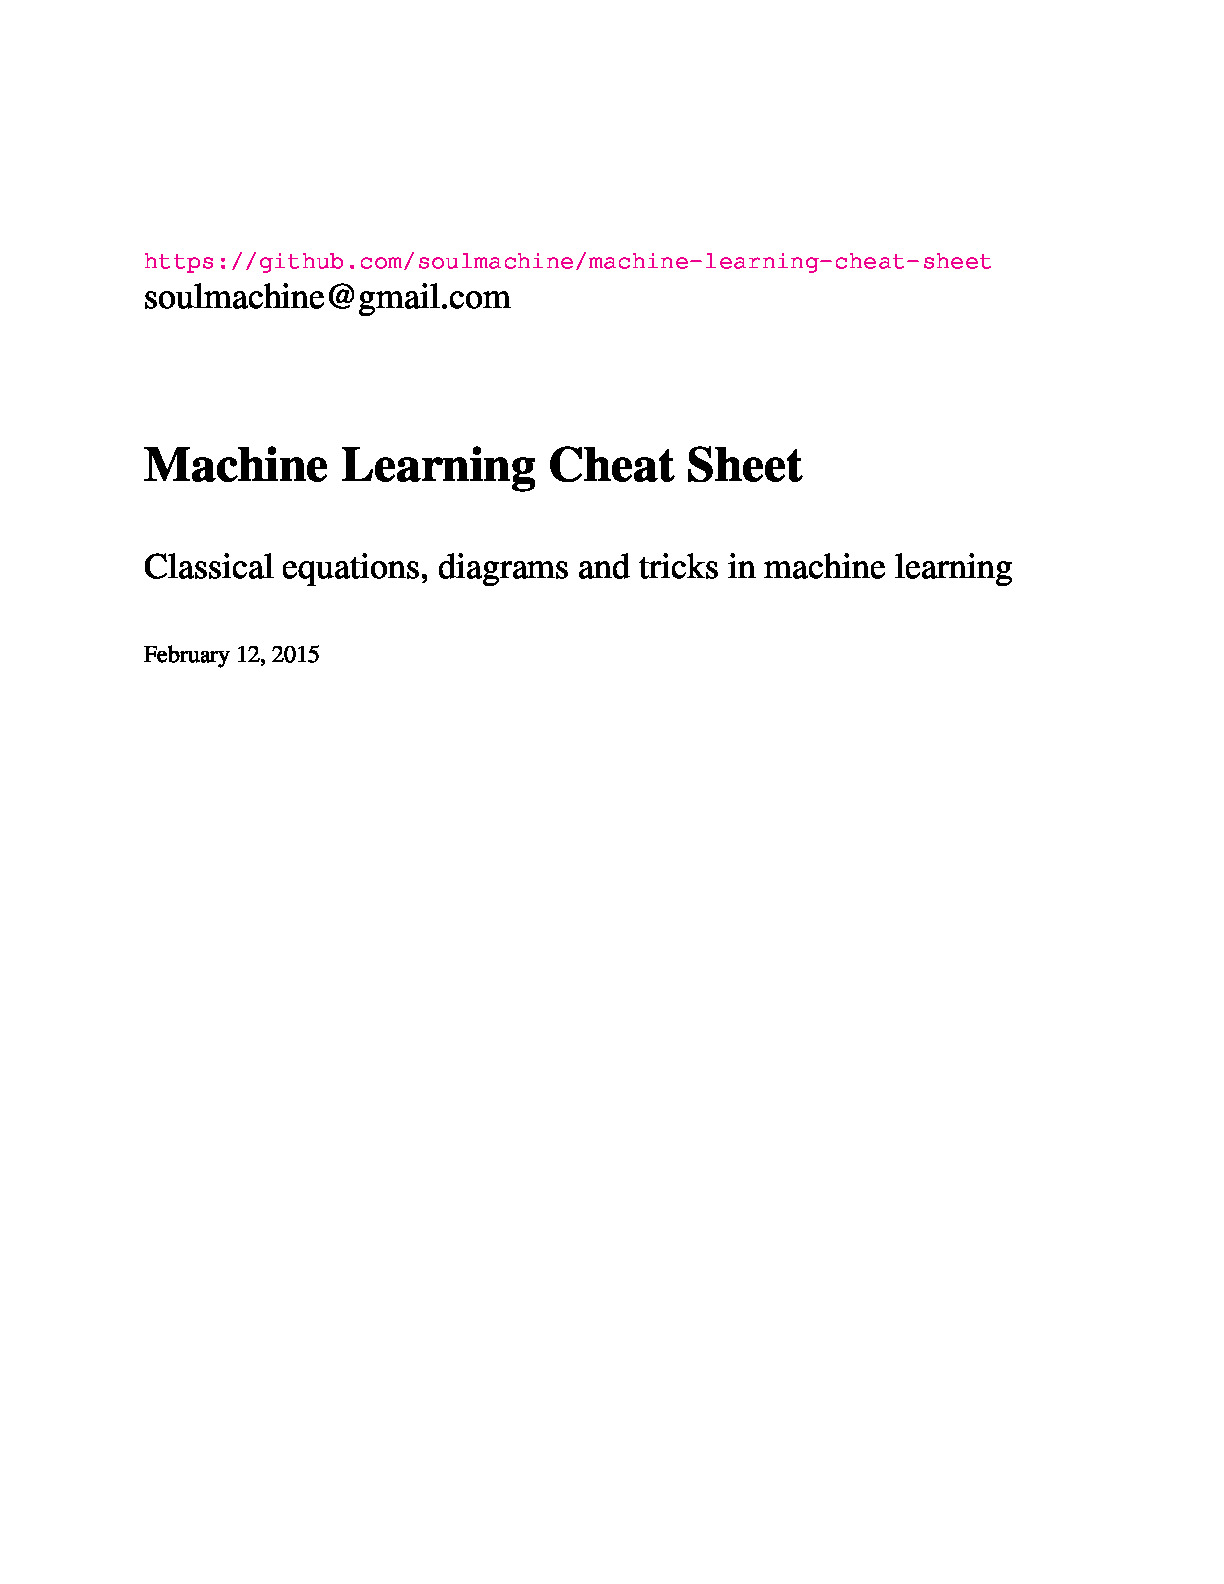 Machine Learning Cheat Sheet